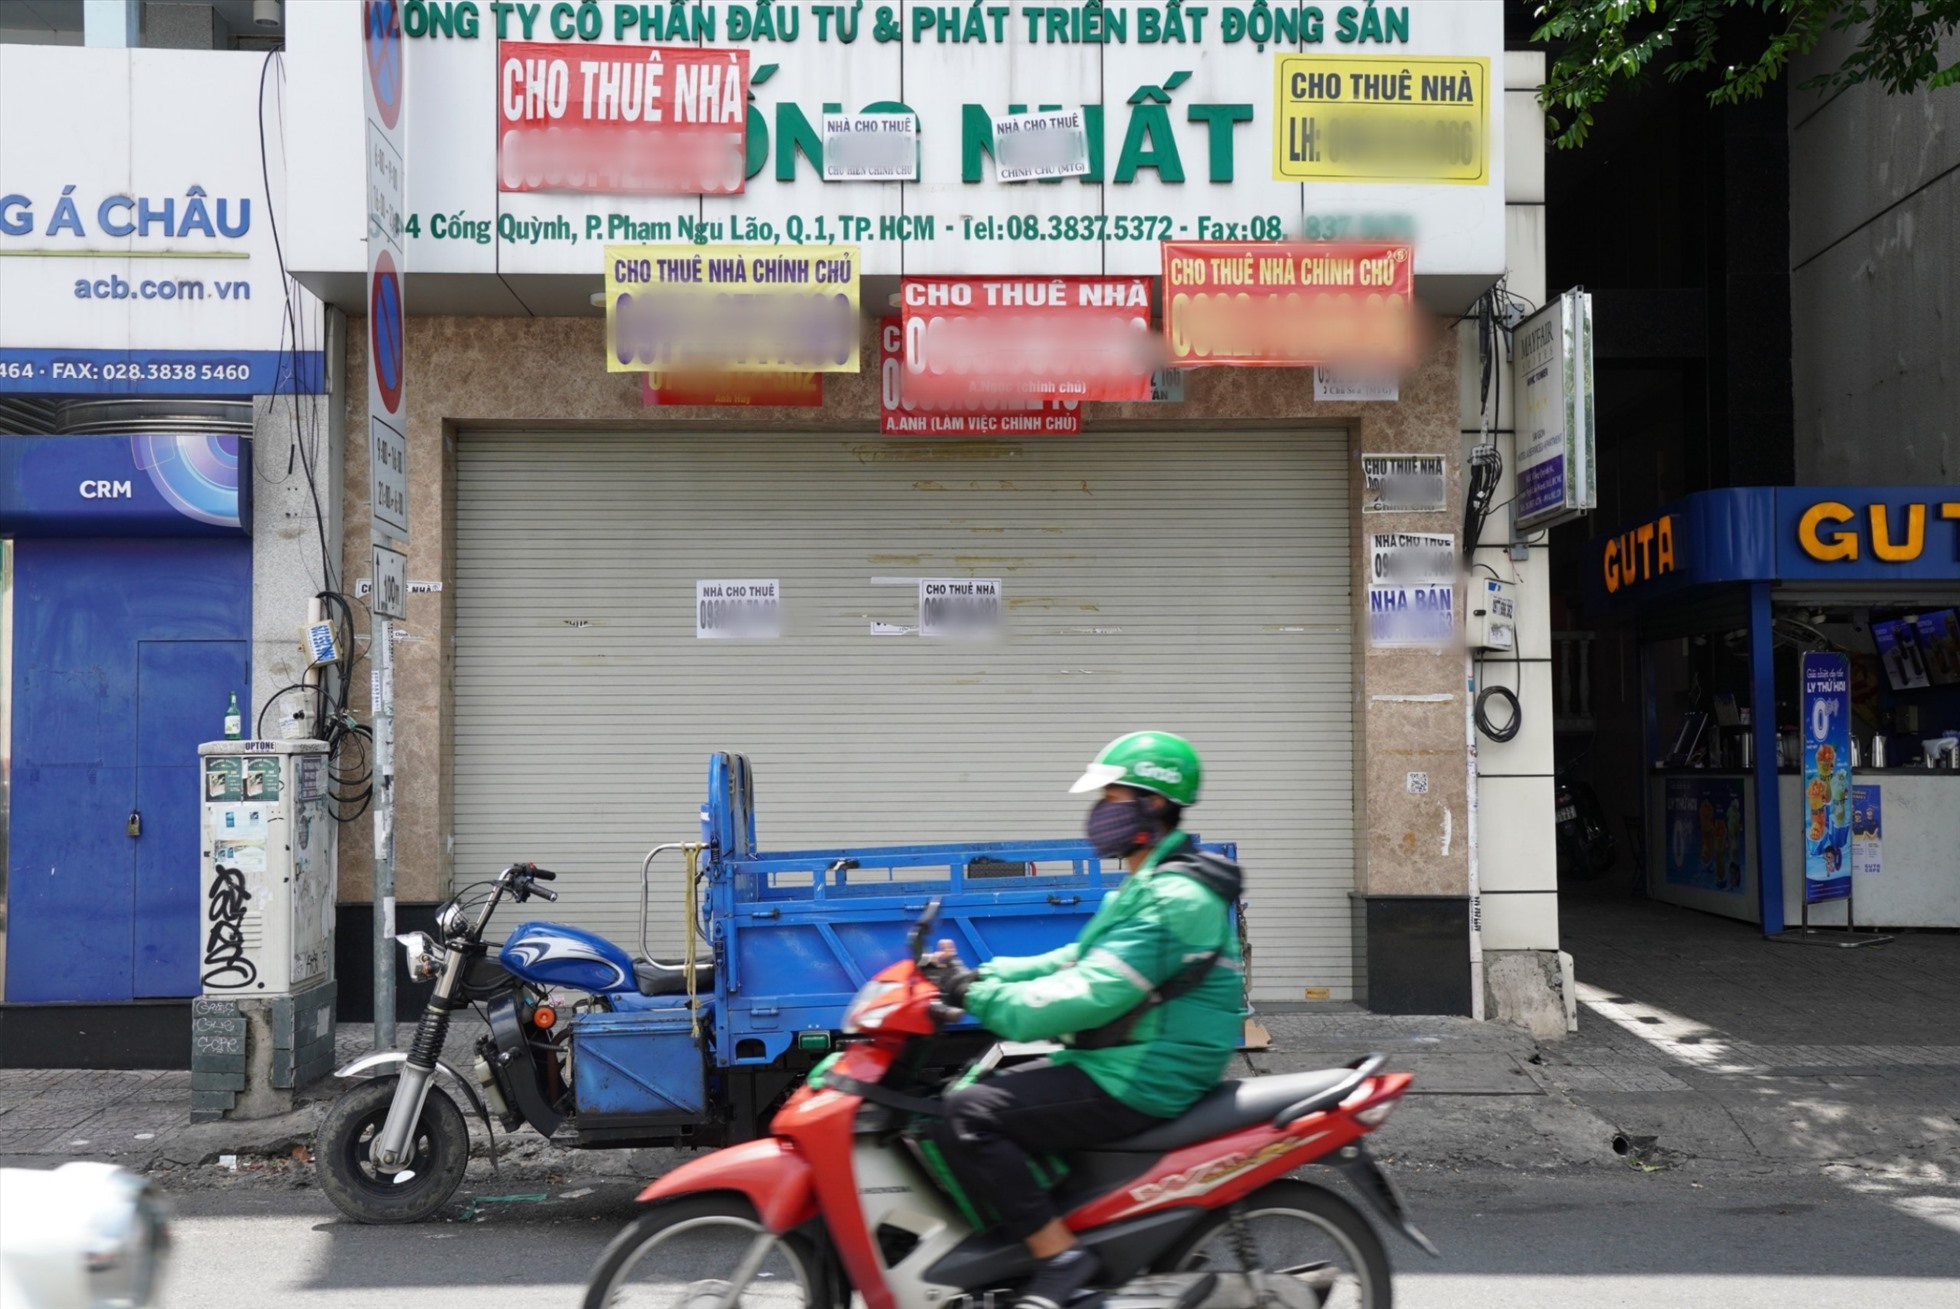 Điều đáng nói đây những cửa hàng có vị trí kinh doanh đắc địa bậc nhất ở Nha Trang. Thời điểm một vài năm trước, khi khách quốc tế đến Nha Trang đông đúc thì các cửa hàng này ăn nên làm ra, kiếm bộn tiền mỗi ngày. Thời điểm đó các mặt bằng kinh doanh ở tuyến phố này luôn được lấp đầy, để tìm kiếm một vị trí kinh doanh lúc đó là khá khó khăn, với giá cực kỳ đắt đỏ.